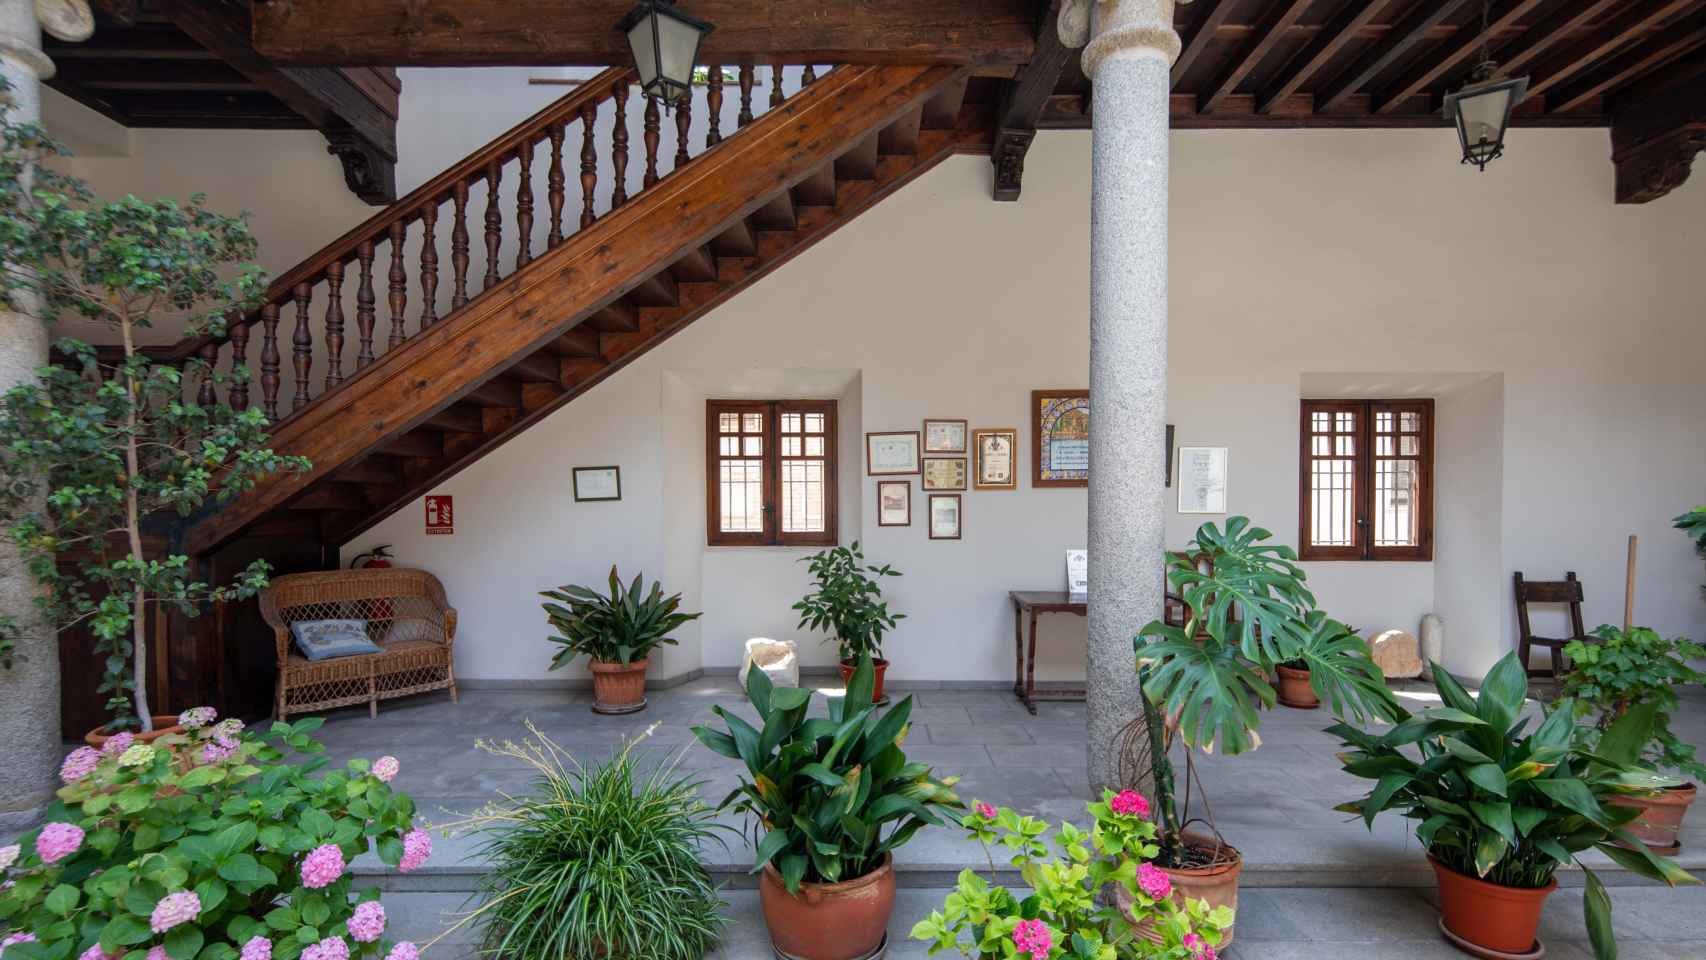 Escaleras de madera que dan acceso a la planta primera del palacio de Medinilla